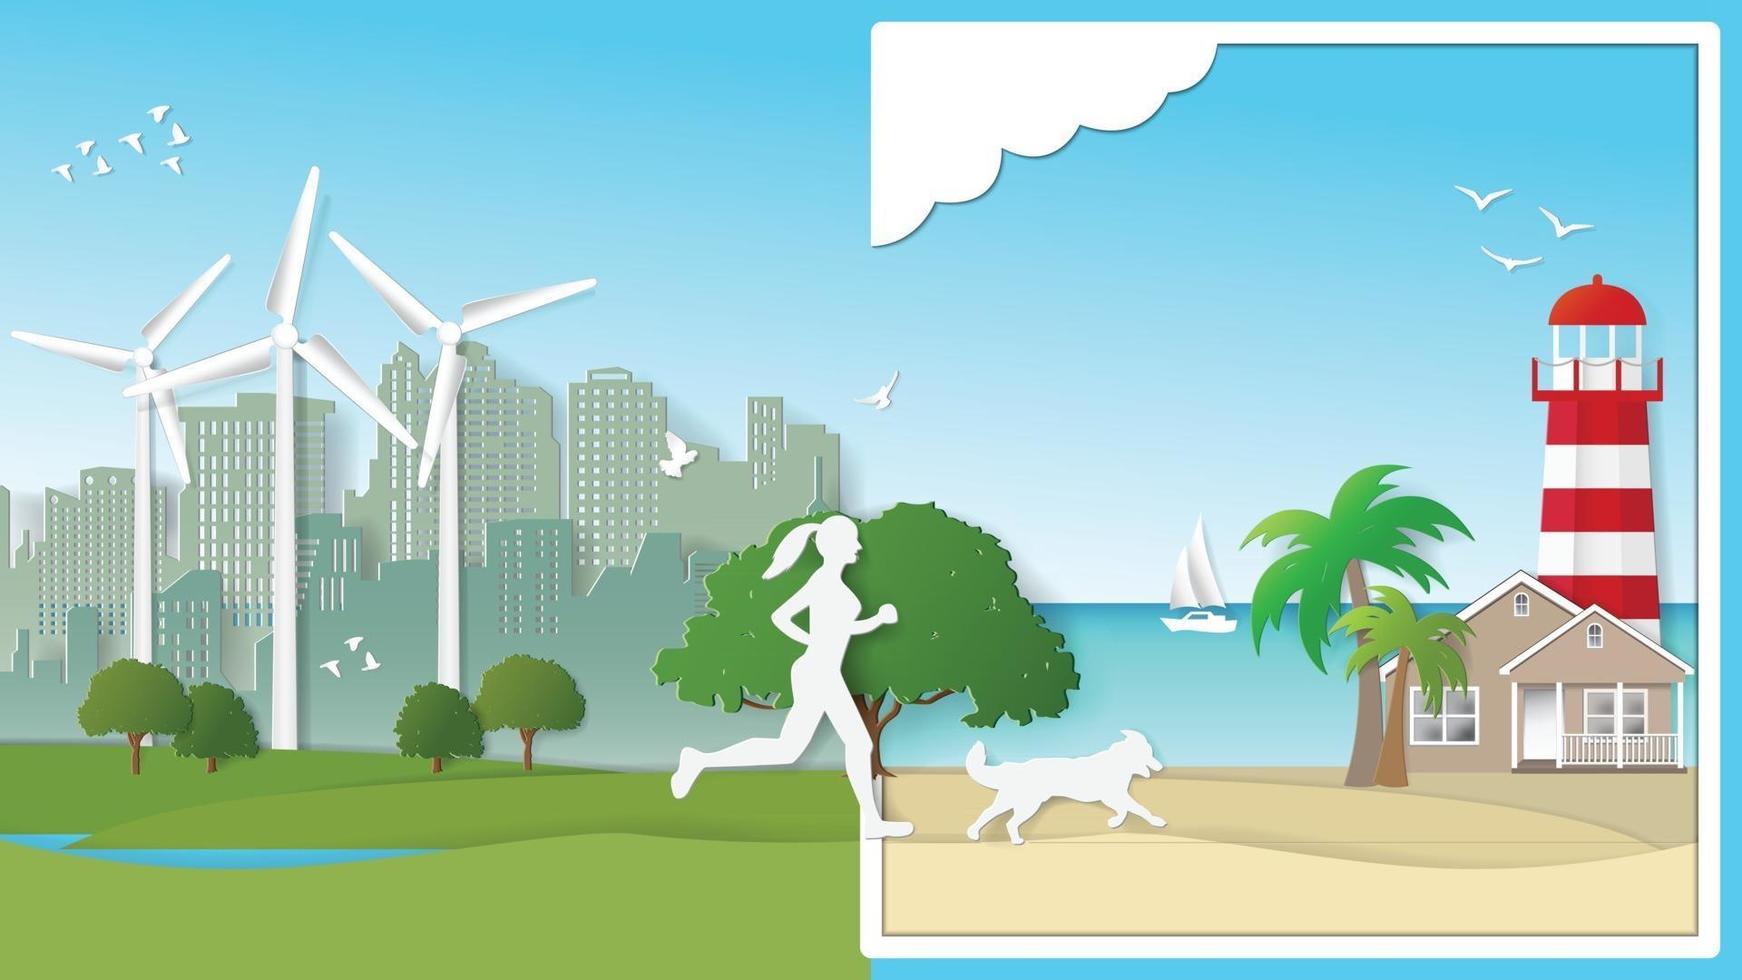 papier pliant art illustration vectorielle de style origami.concept d'énergie verte durable écologie respectueux de l'environnement, activités de plein air en solo, femme et chien courent seuls des parcs de la ville à la plage. vecteur